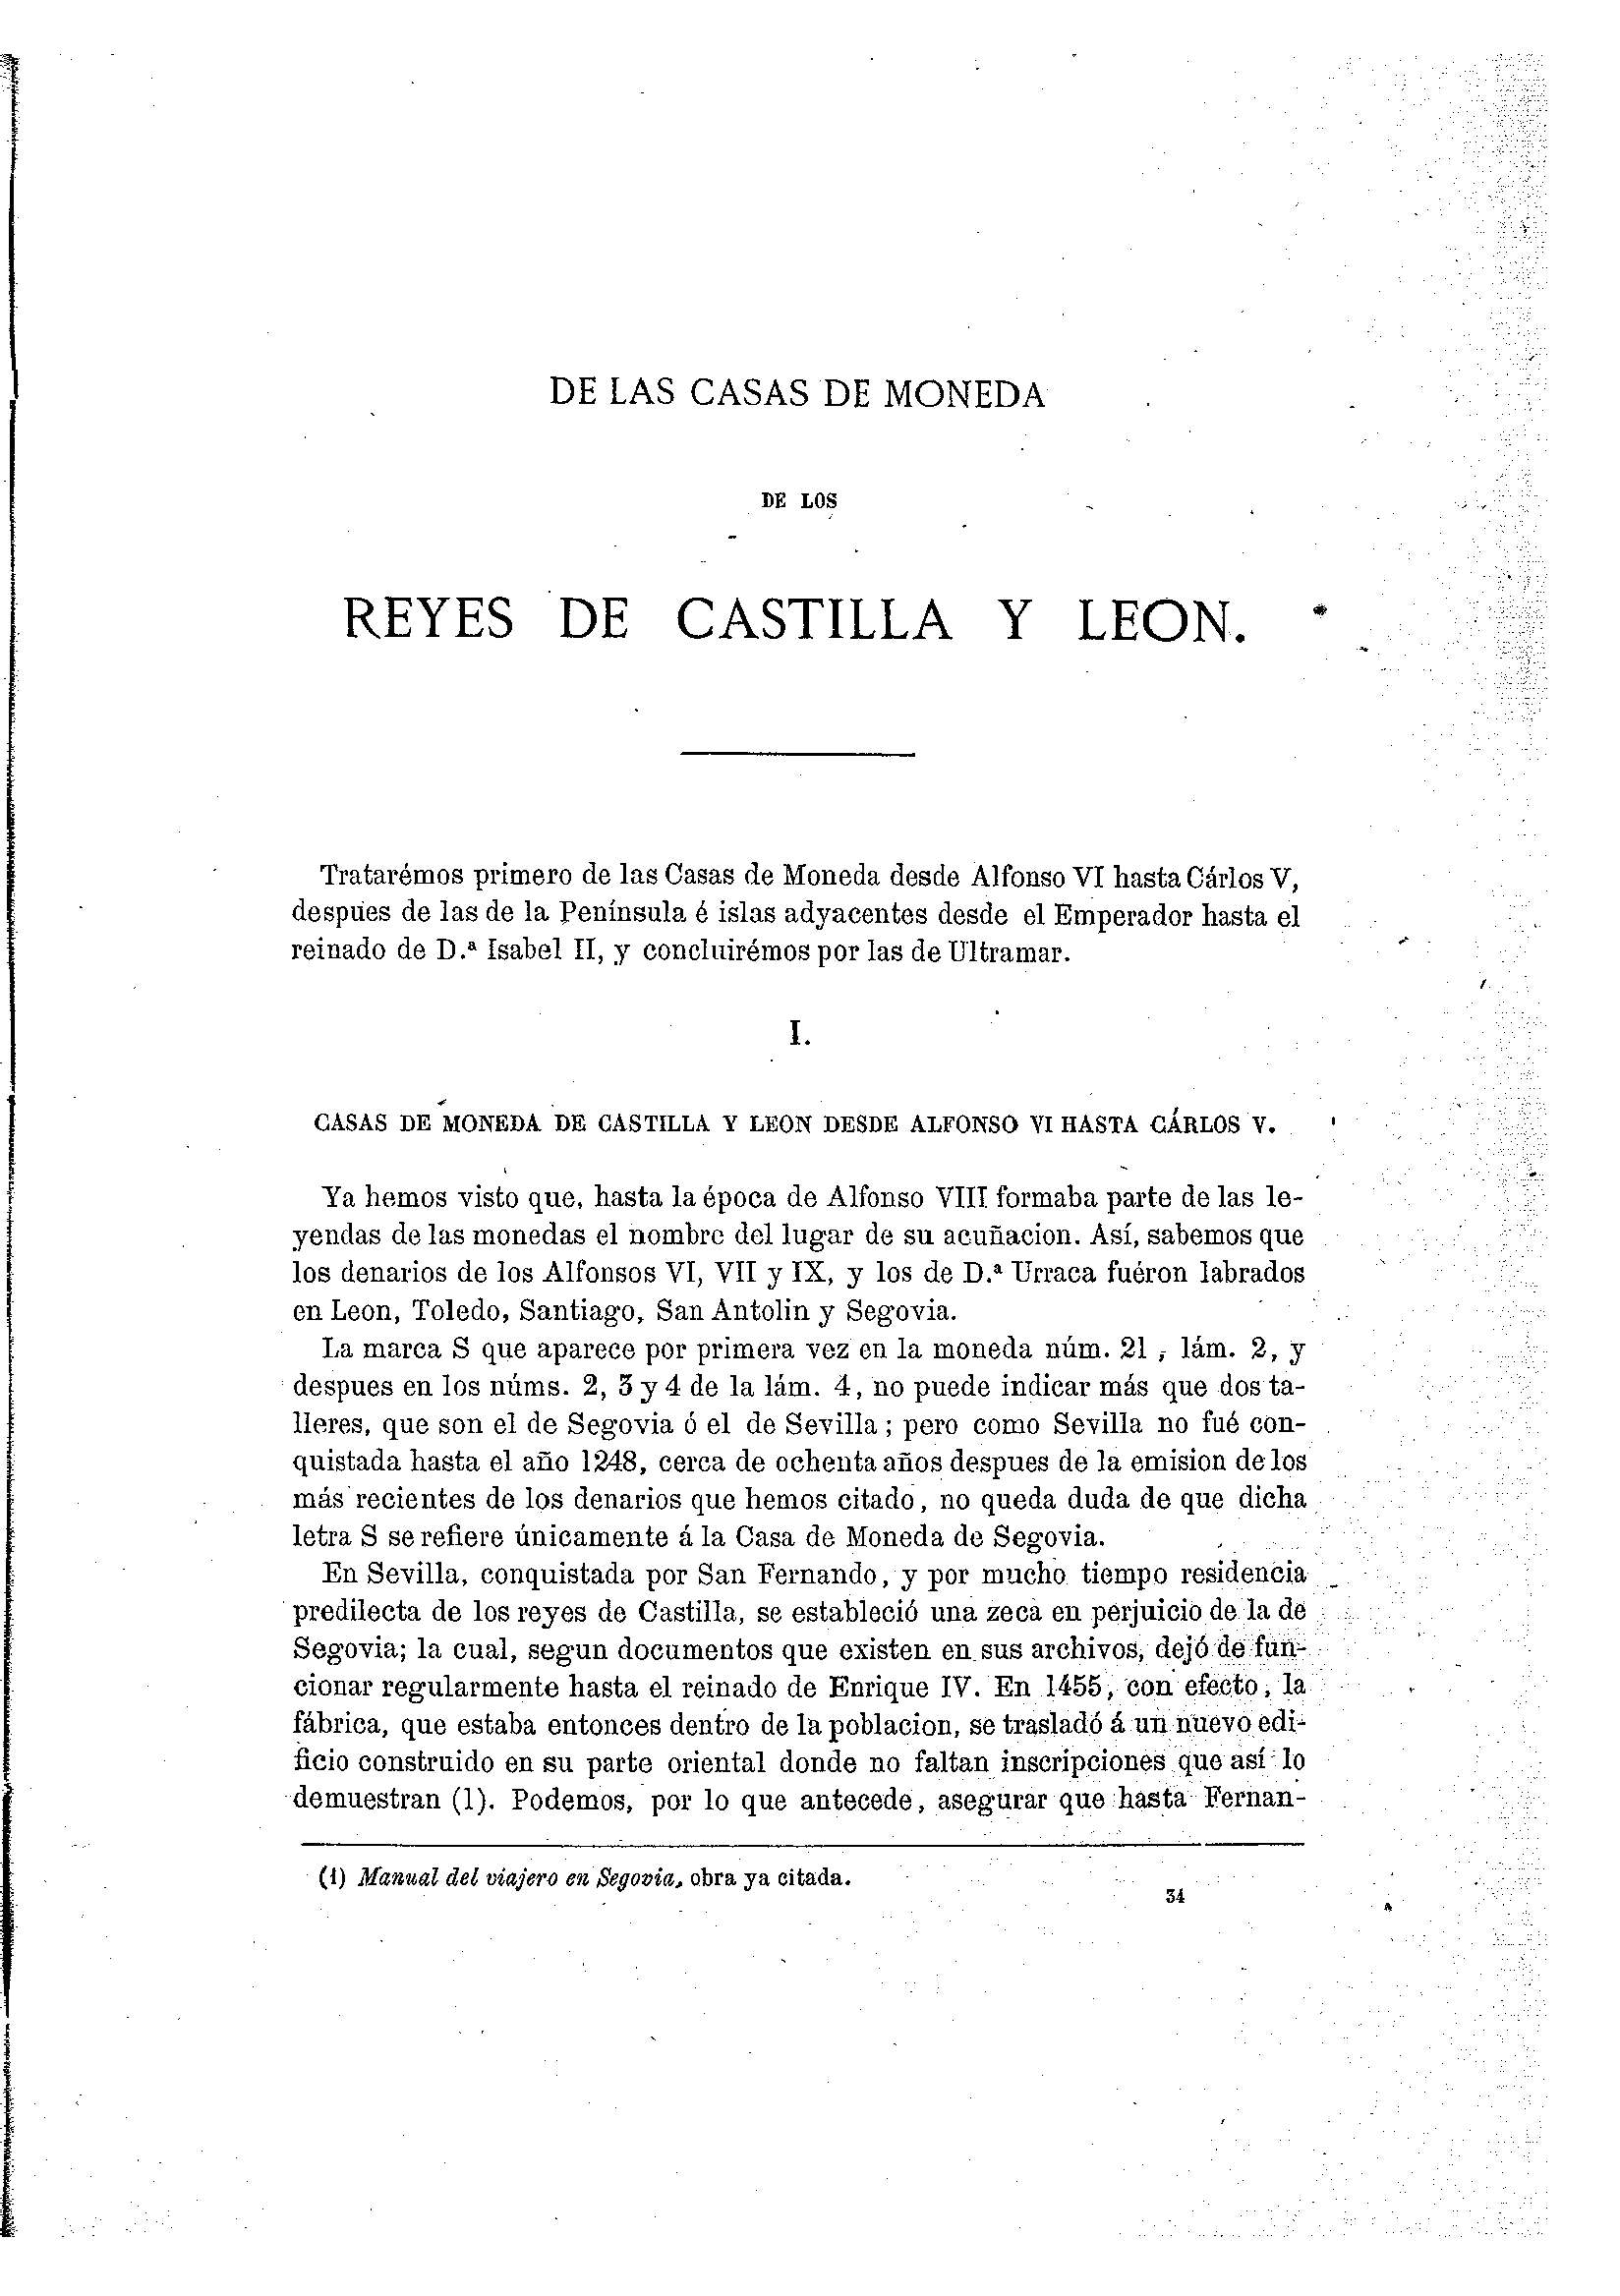 265 [De las Casas de Monedas de los Reyes de Castilla y Leon]